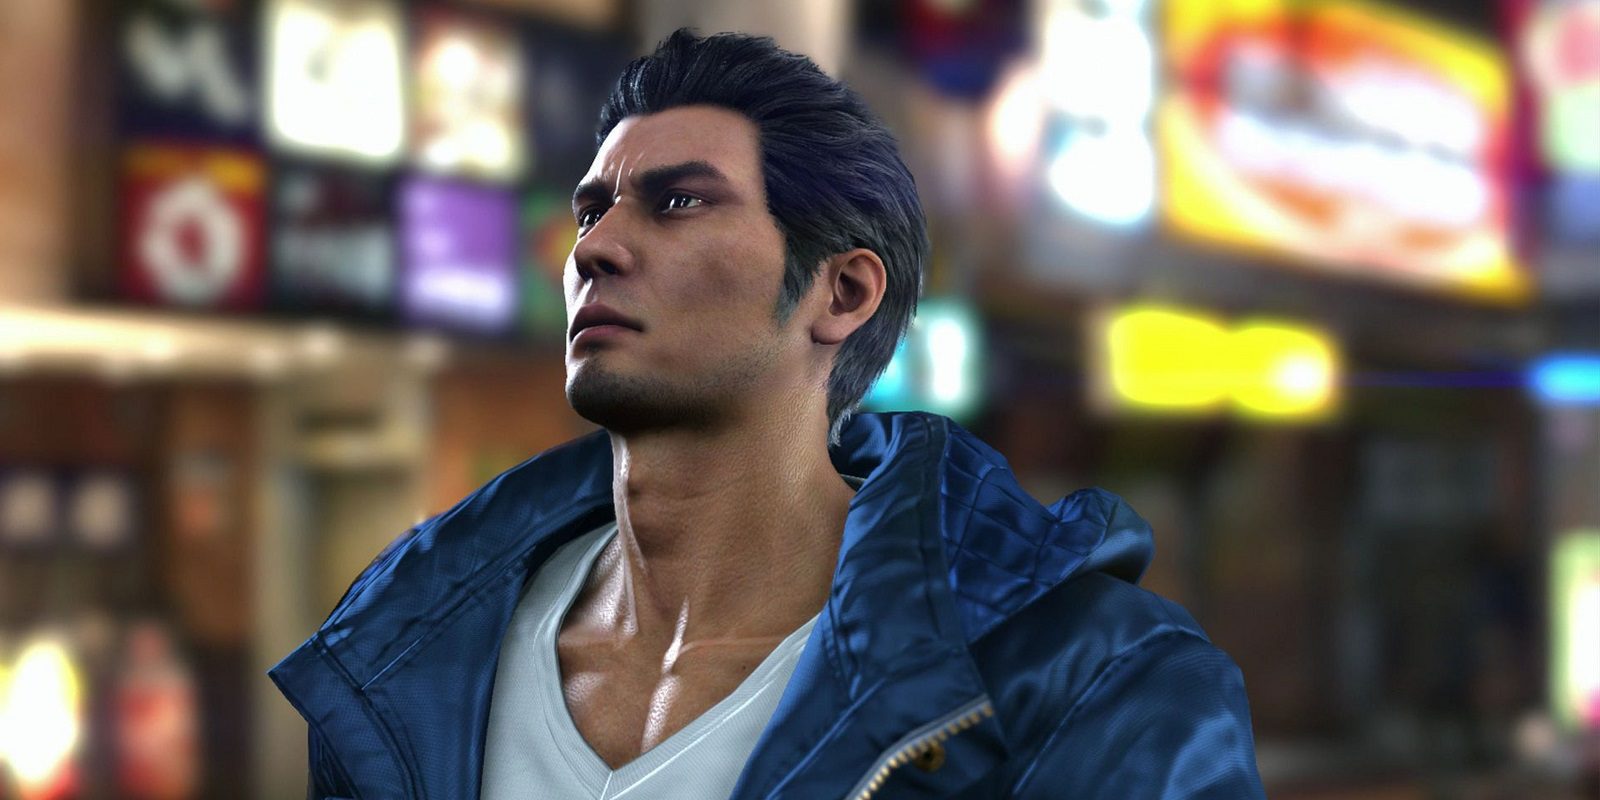 Sega desvela nuevos detalles sobre 'Yakuza 6' y su argumento